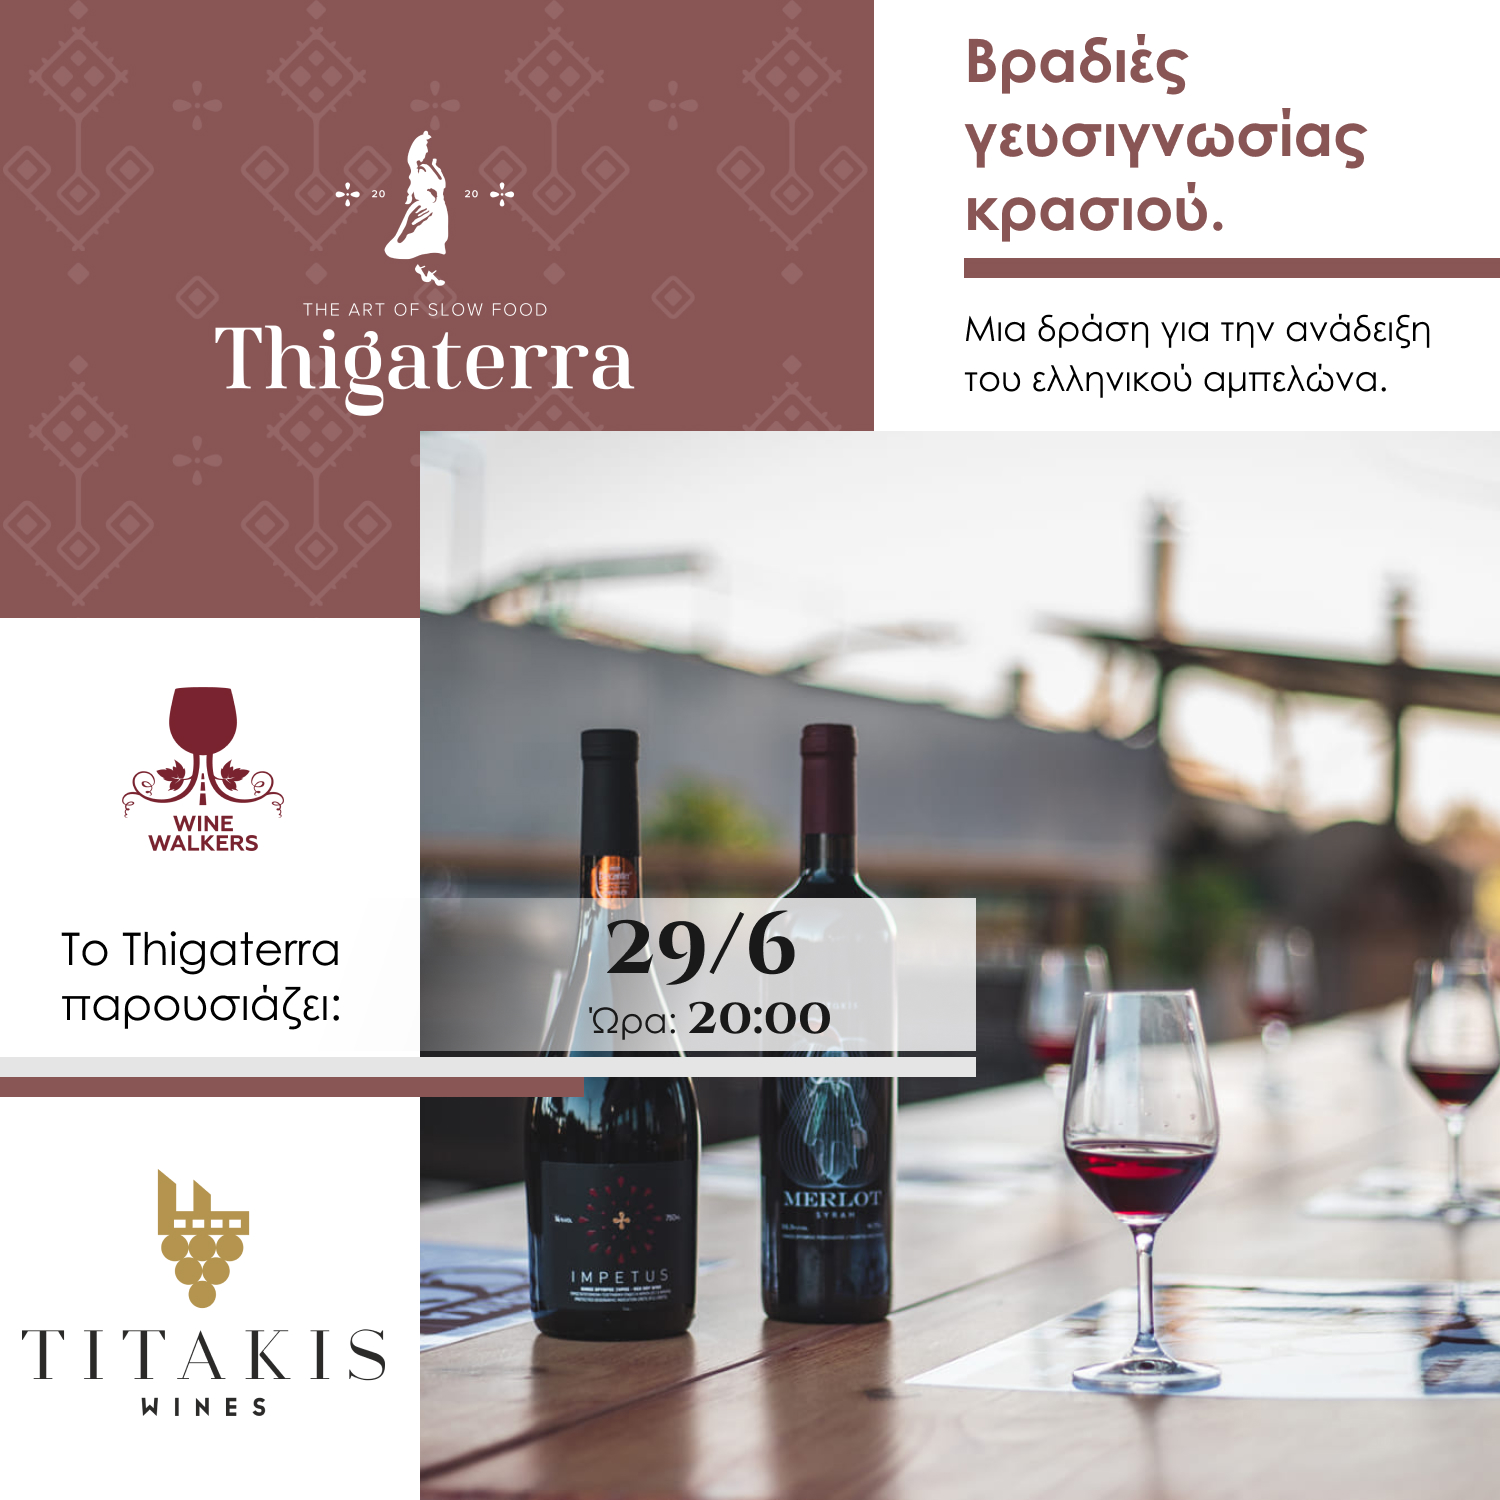 Βραδιές γευσιγνωσίας κρασιού: Titakis Wines